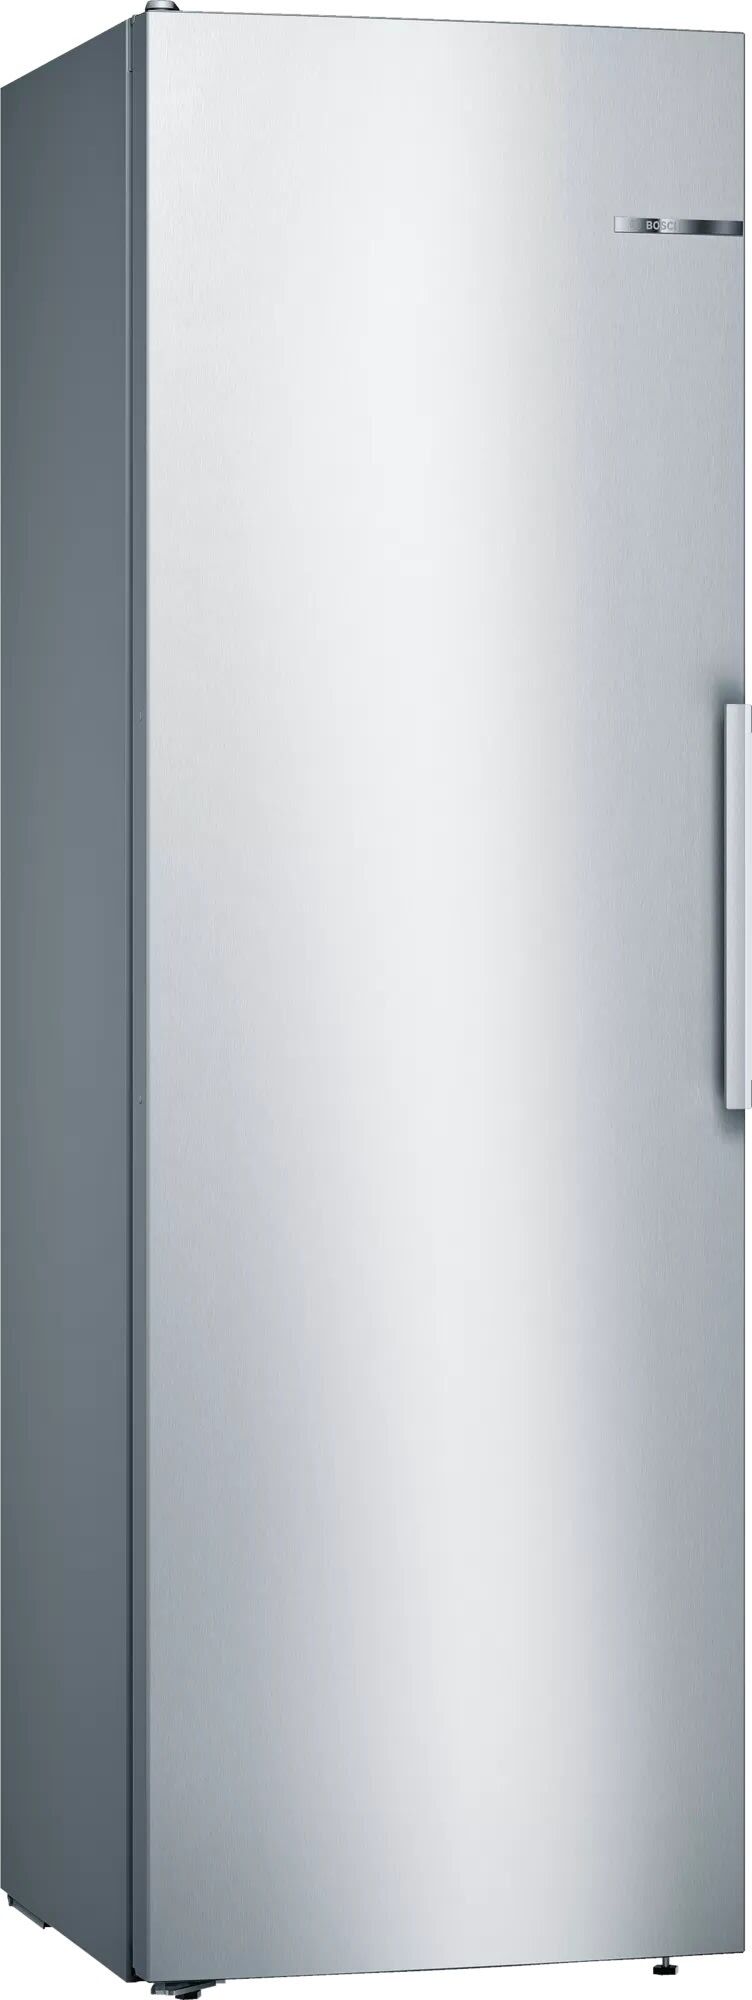 Bosch Serie 4 KSV36VLDP jääkaappi